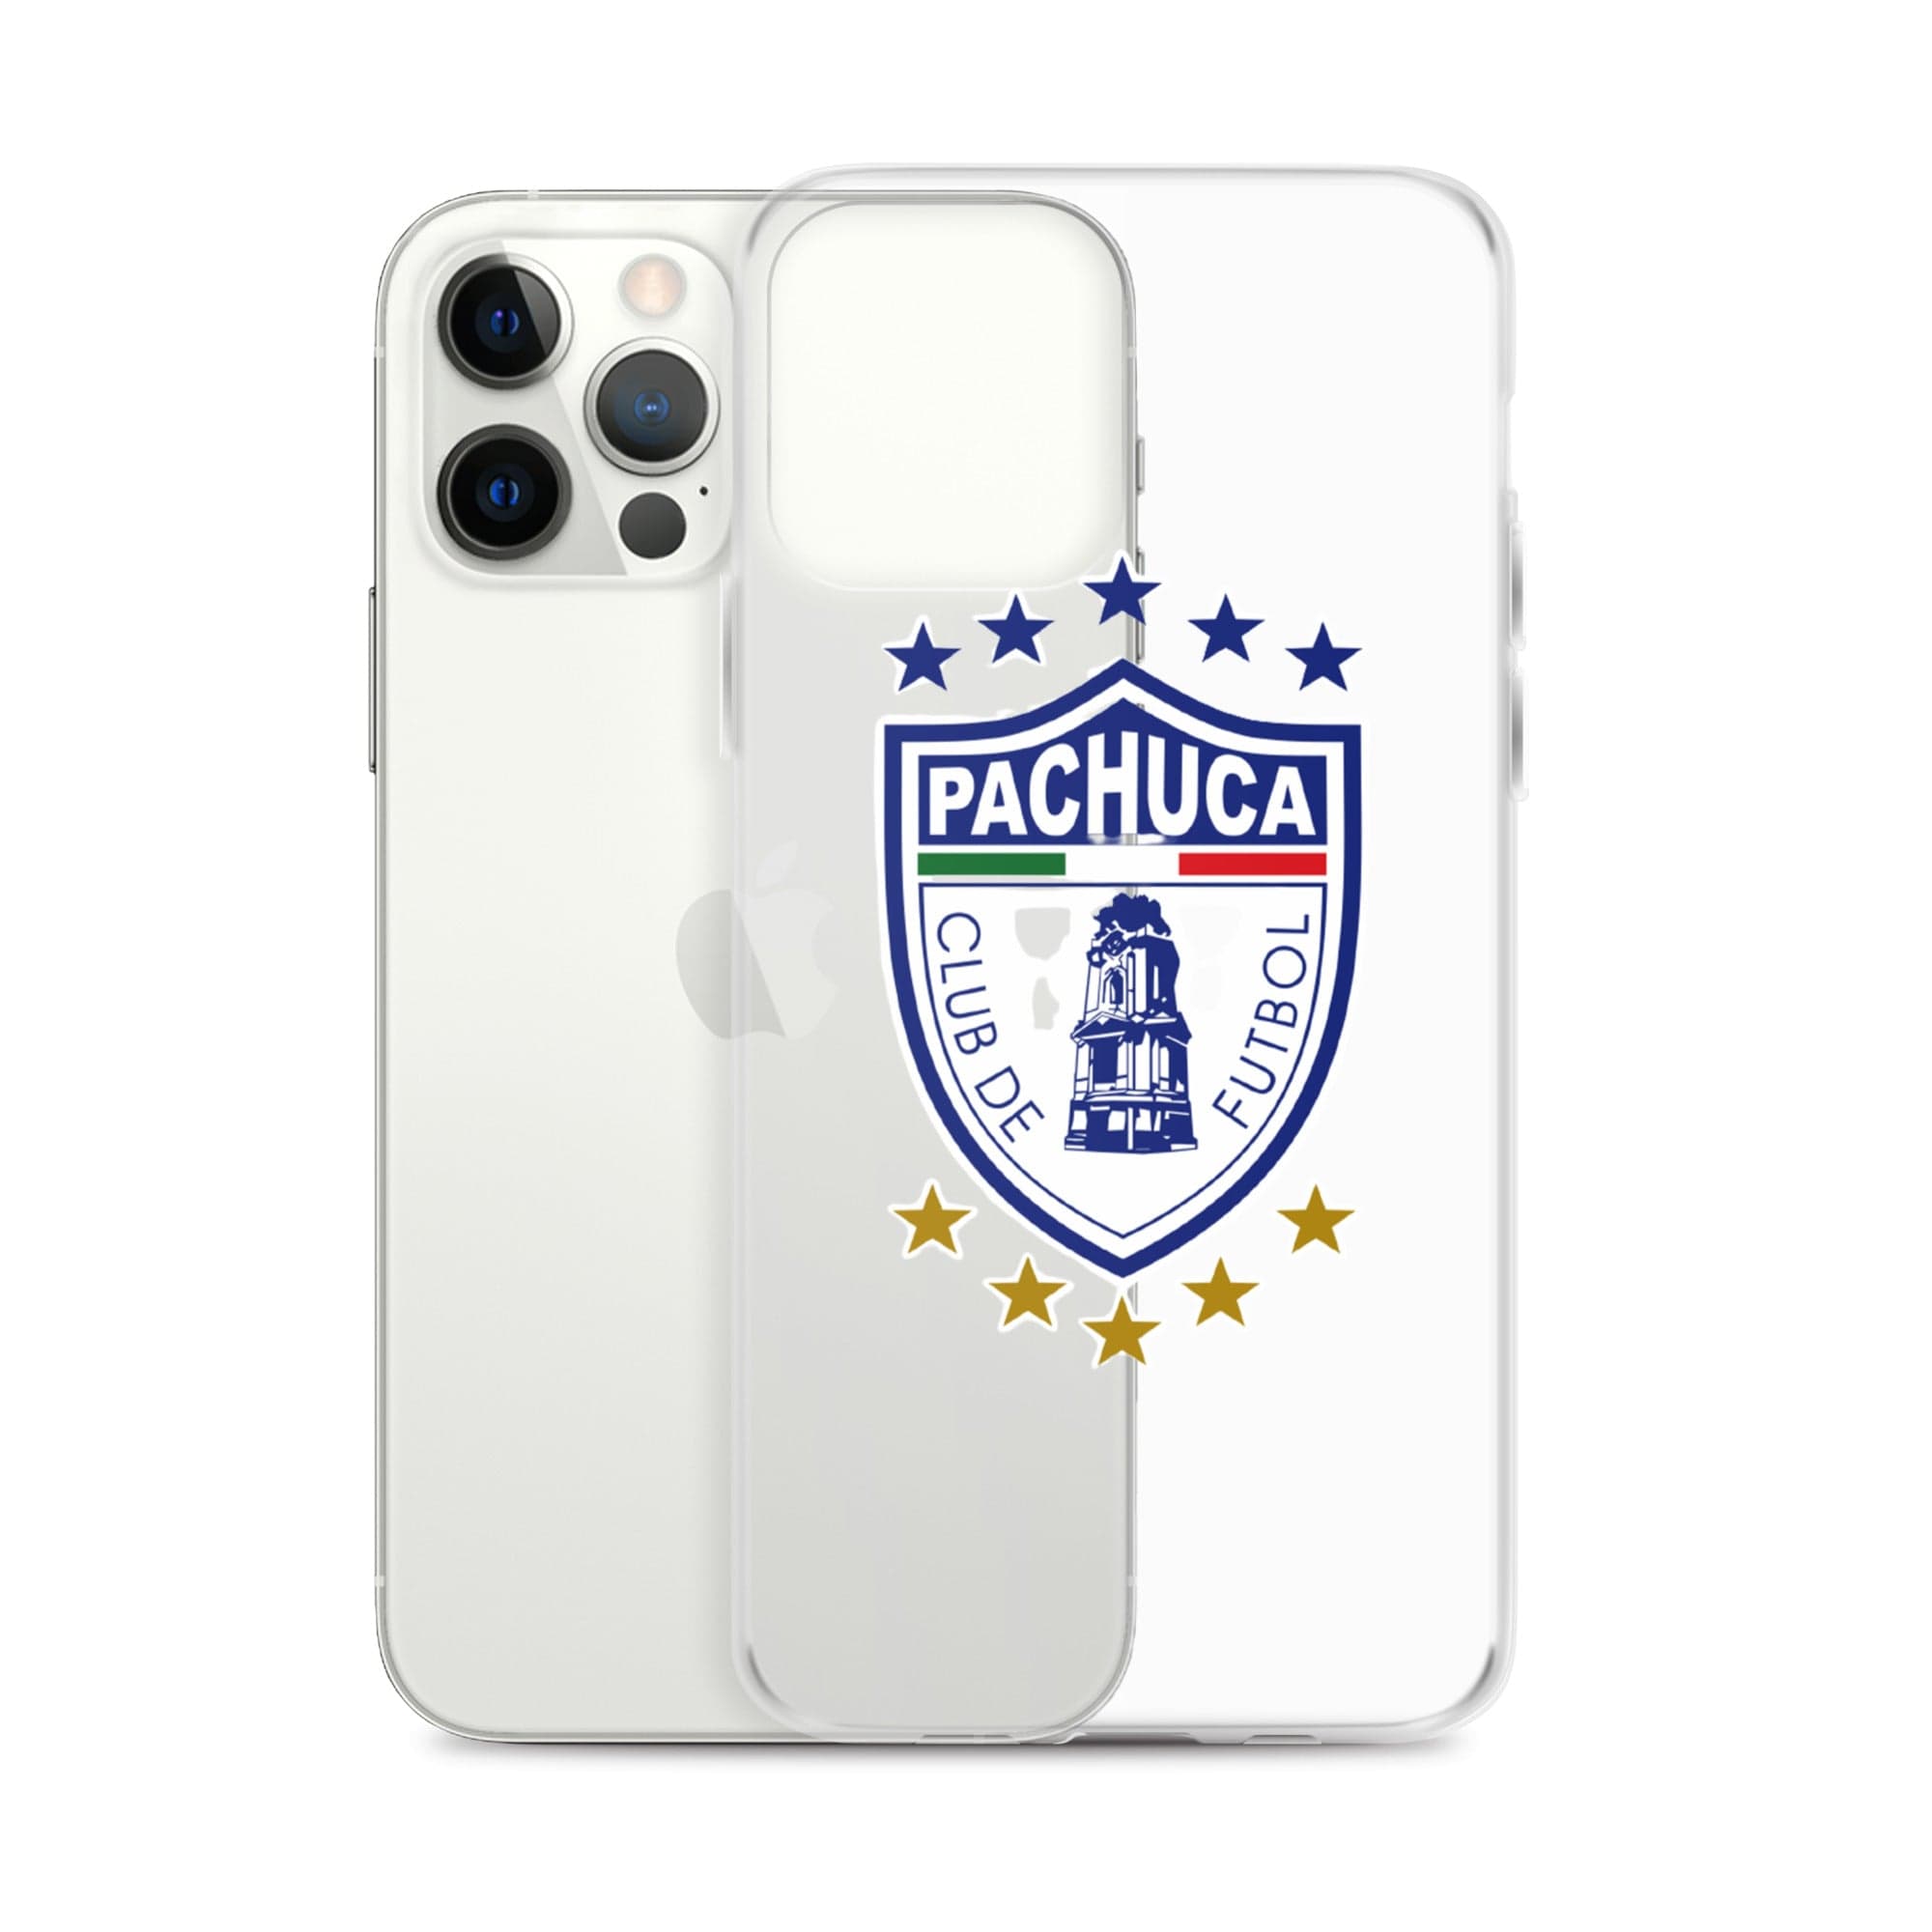 GorrasVaqueras Pachuca iPhone Case